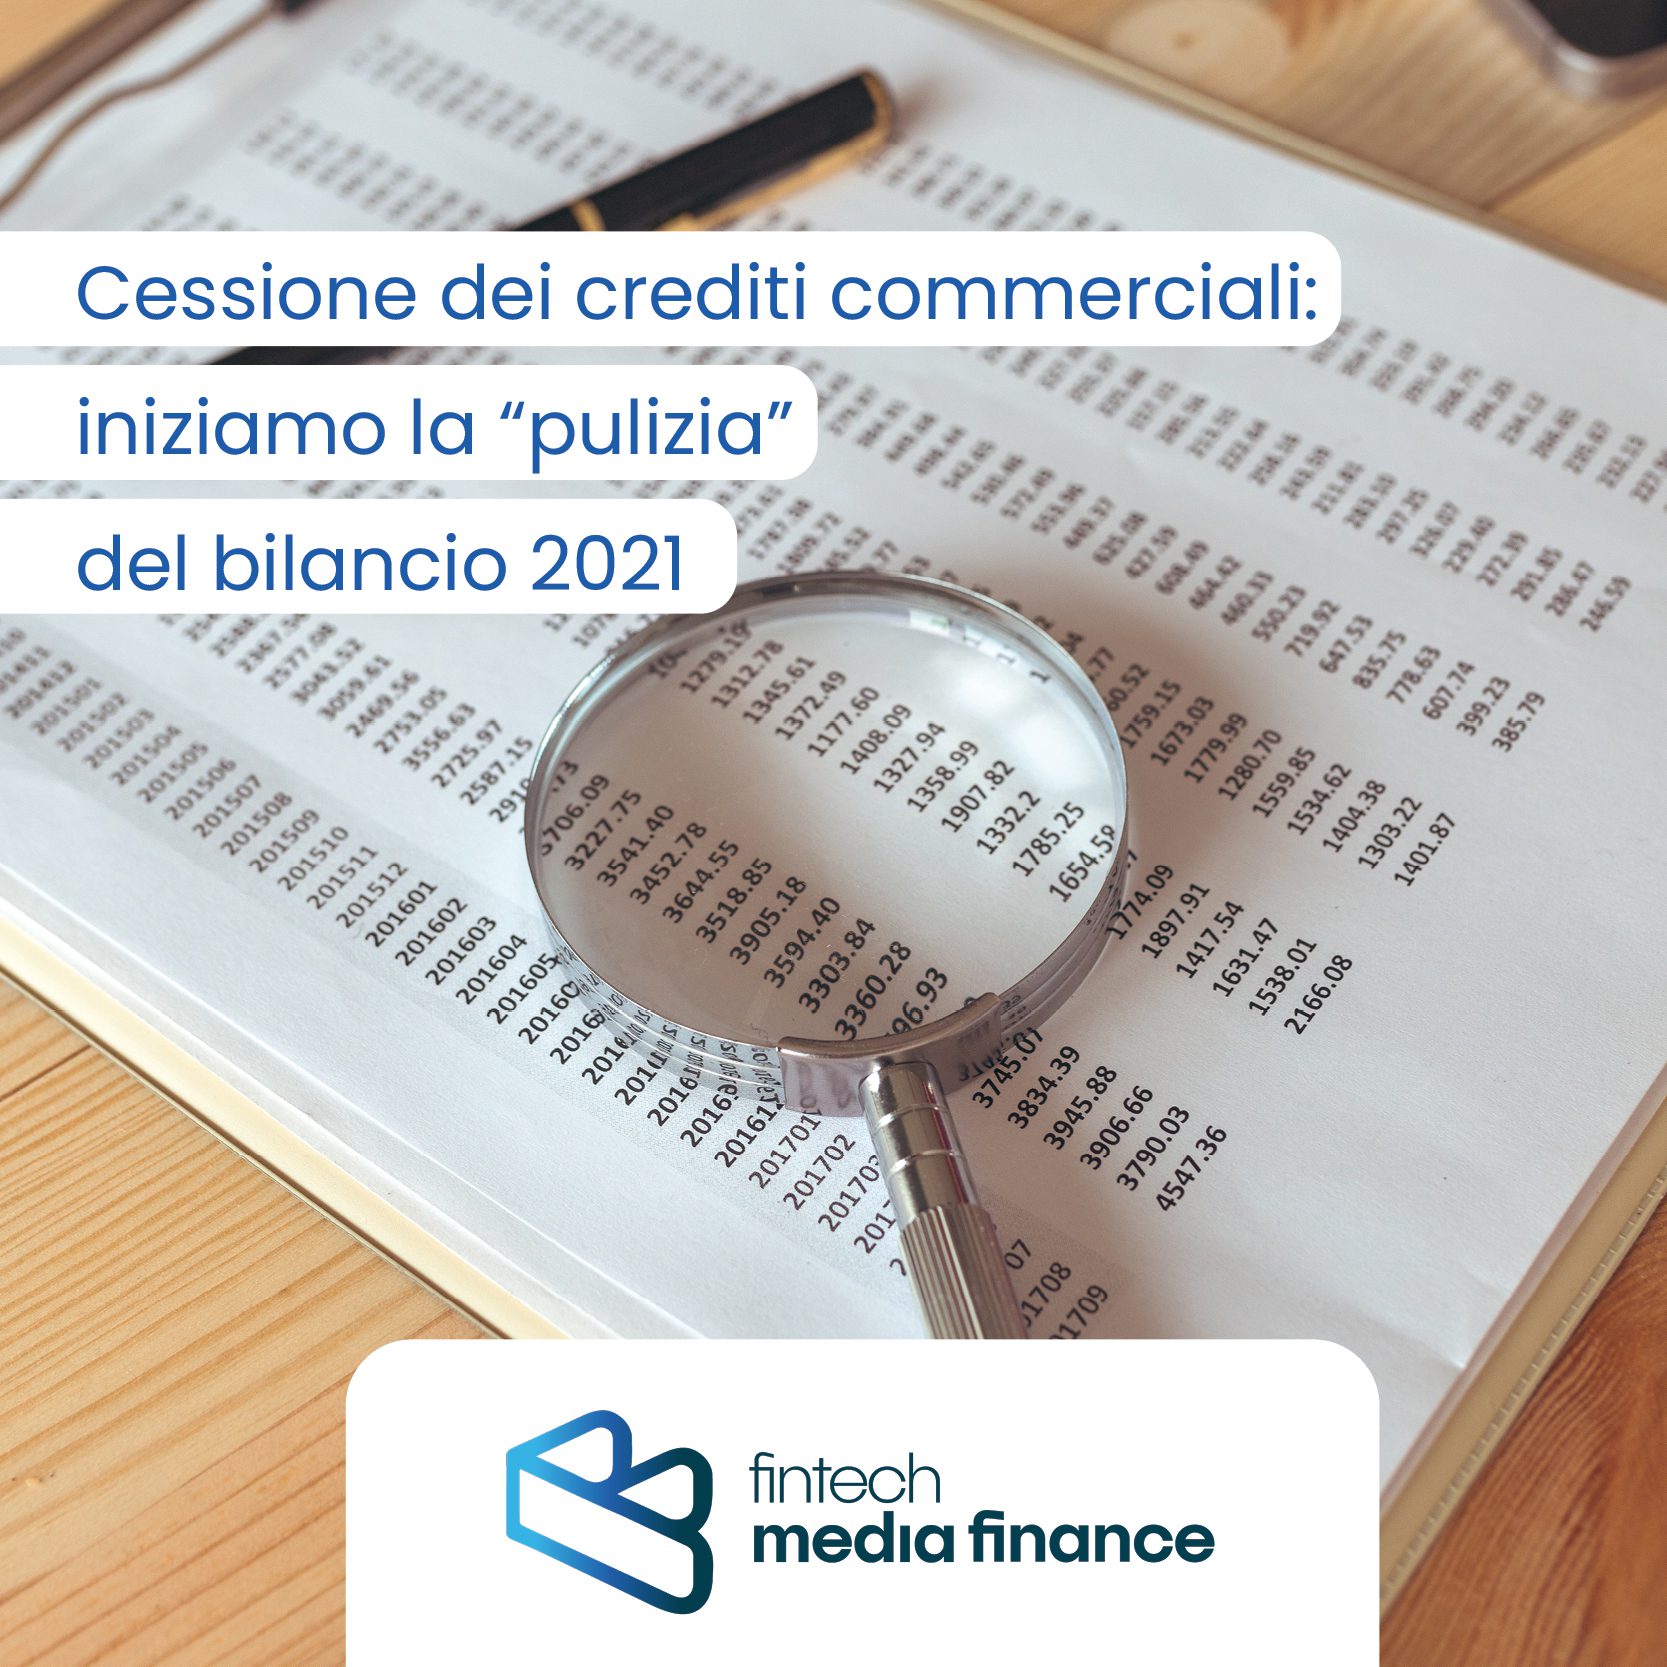 Cessione dei crediti commerciali: iniziamo la “pulizia” del bilancio 2021